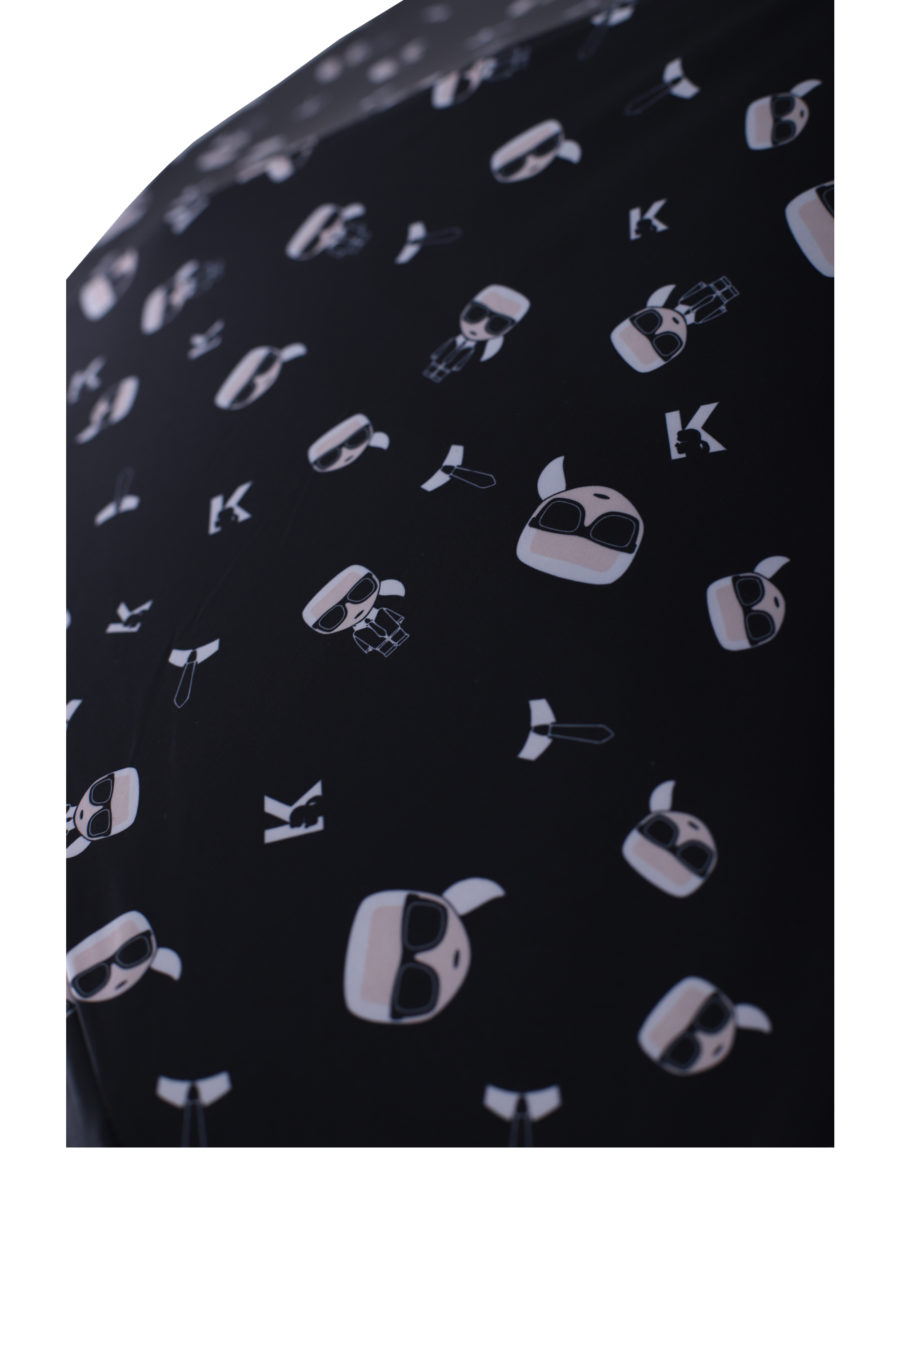 Guarda-chuva preto com padrão de marca - IMG 0126